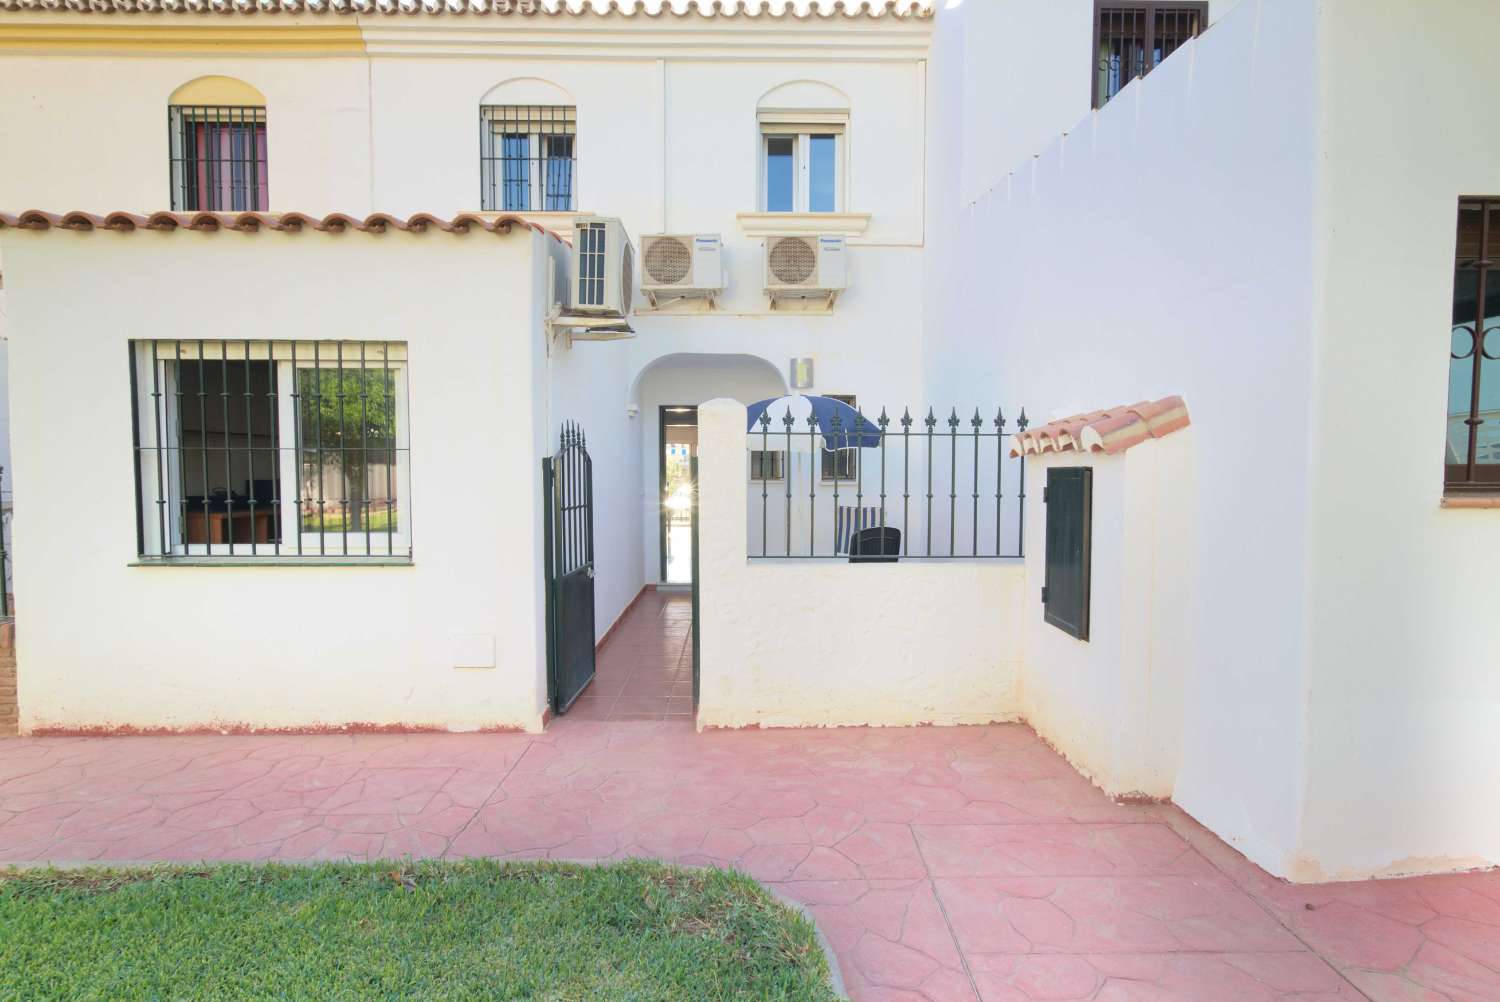 Practica y acogedora vivienda adosada en Velez Malaga